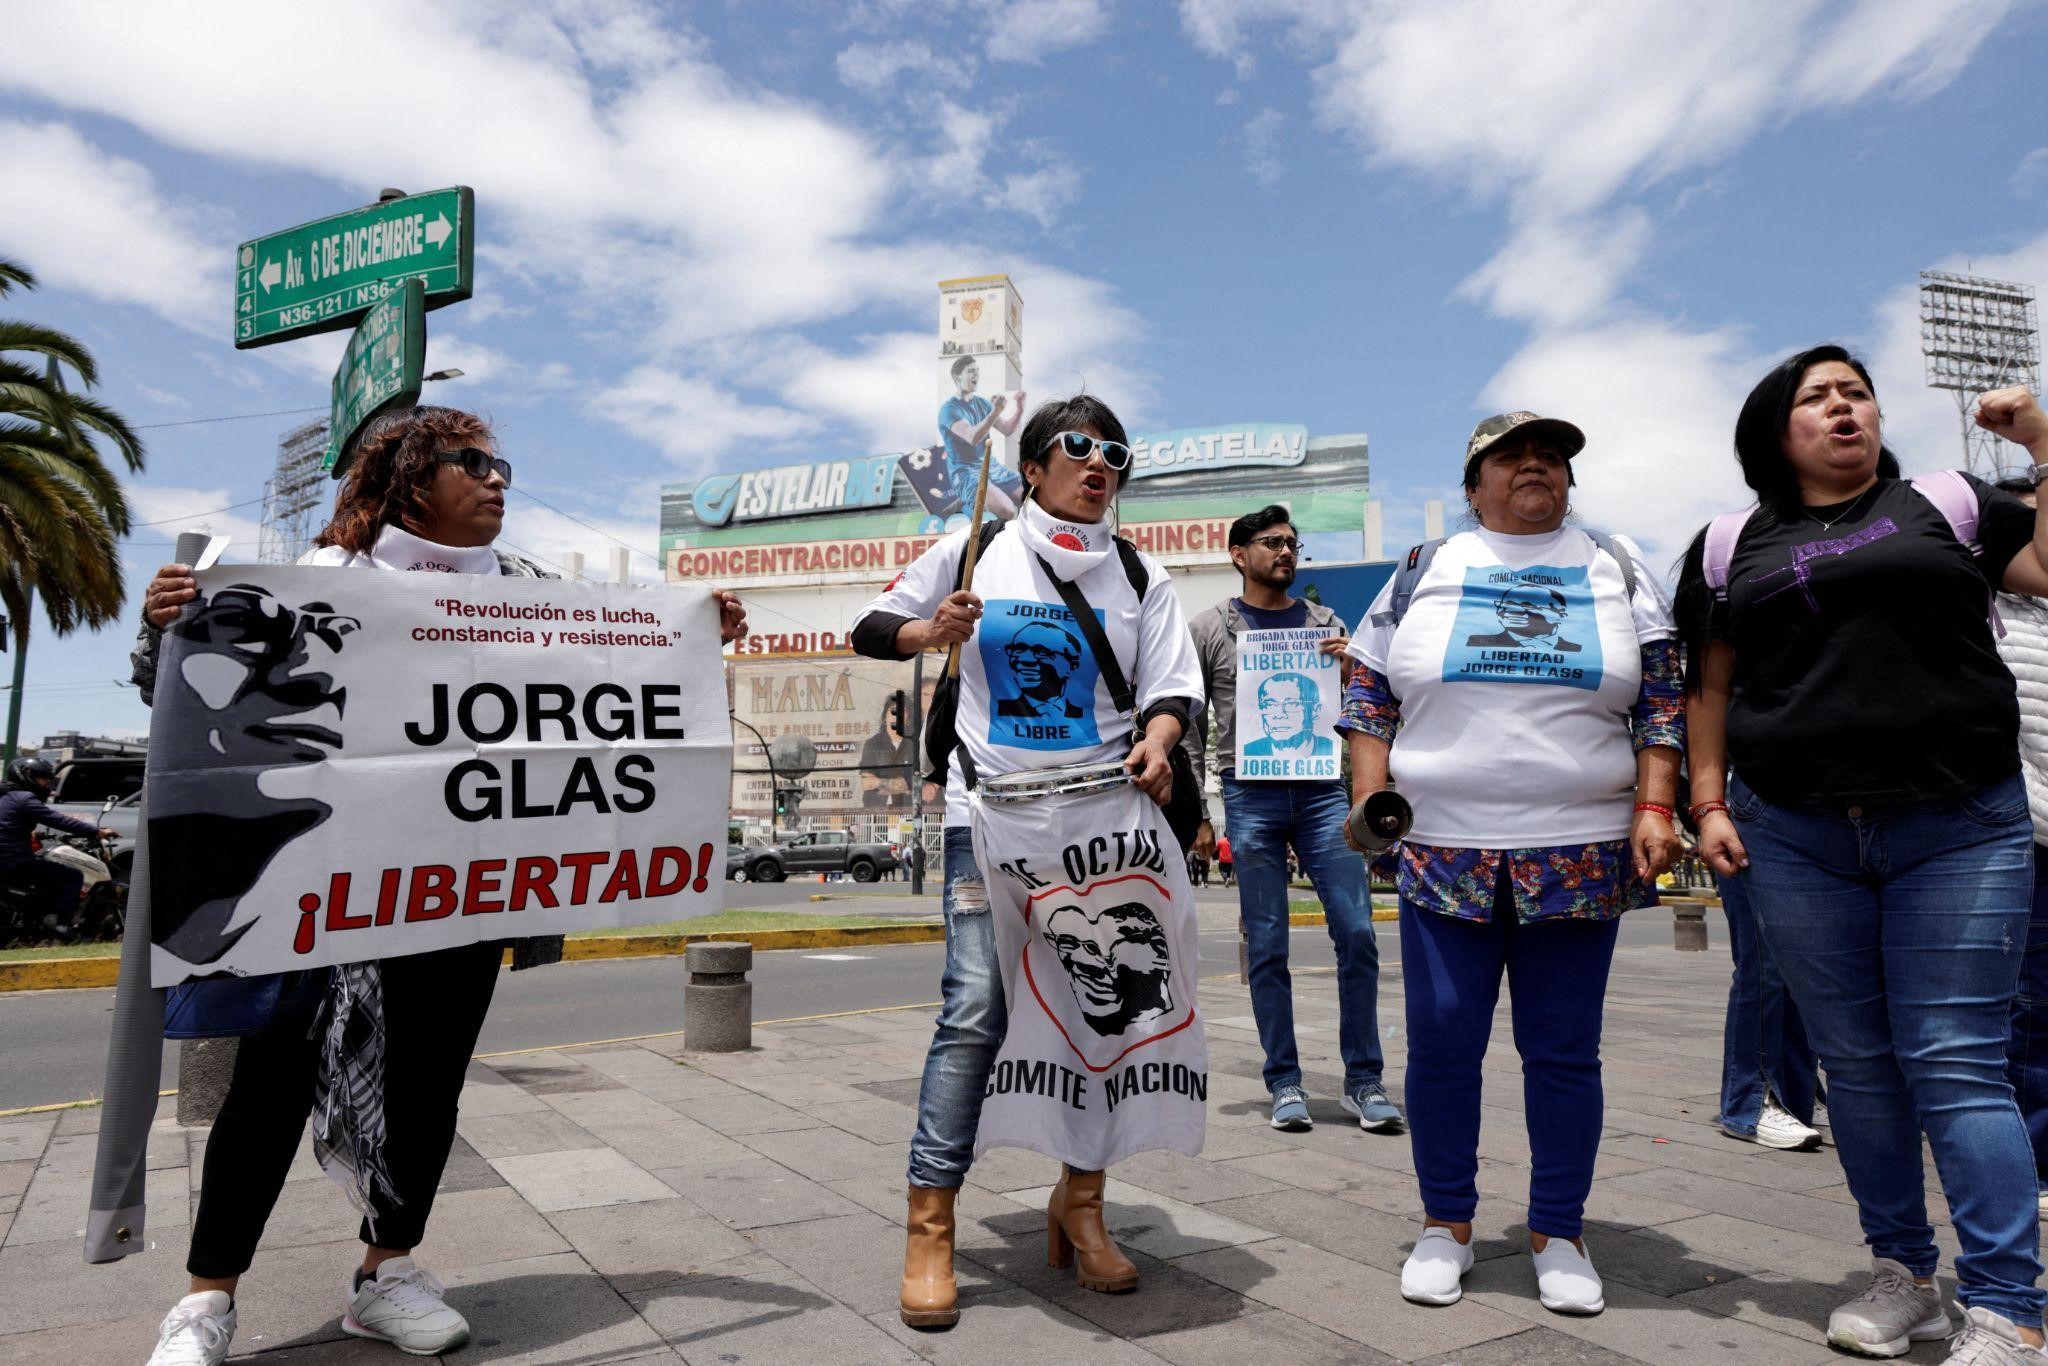 Mexico suspends ties with Ecuador